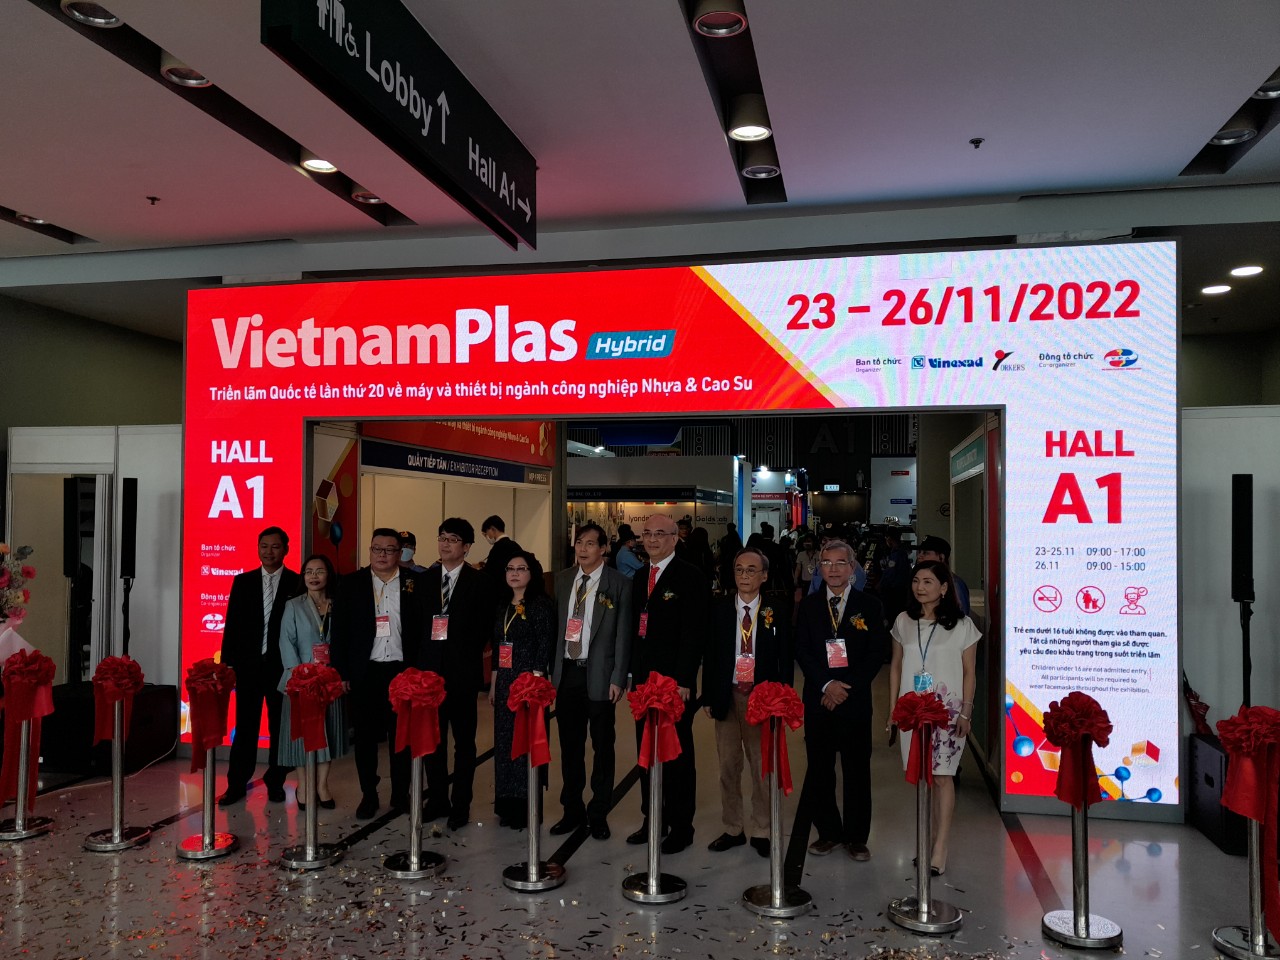 VietnamPlas 2022: Xây dựng giải pháp toàn diện trong ngành sản xuất nhựa và cao su